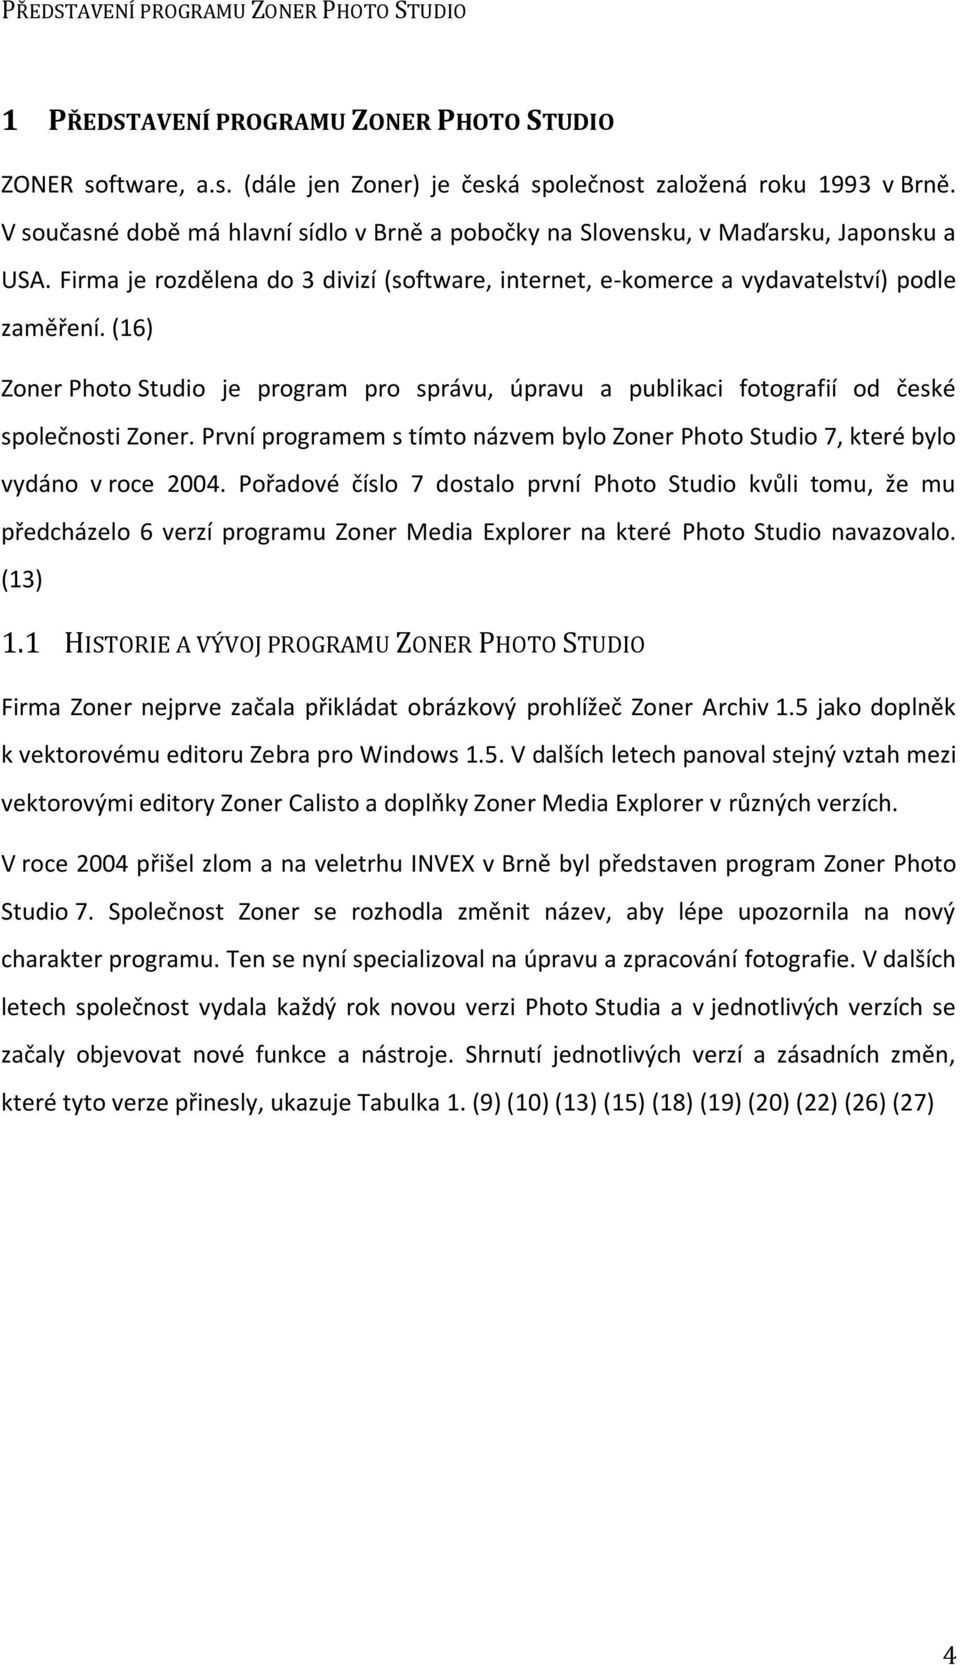 (16) Zoner Photo Studio je program pro správu, úpravu a publikaci fotografií od české společnosti Zoner. První programem s tímto názvem bylo Zoner Photo Studio 7, které bylo vydáno v roce 2004.